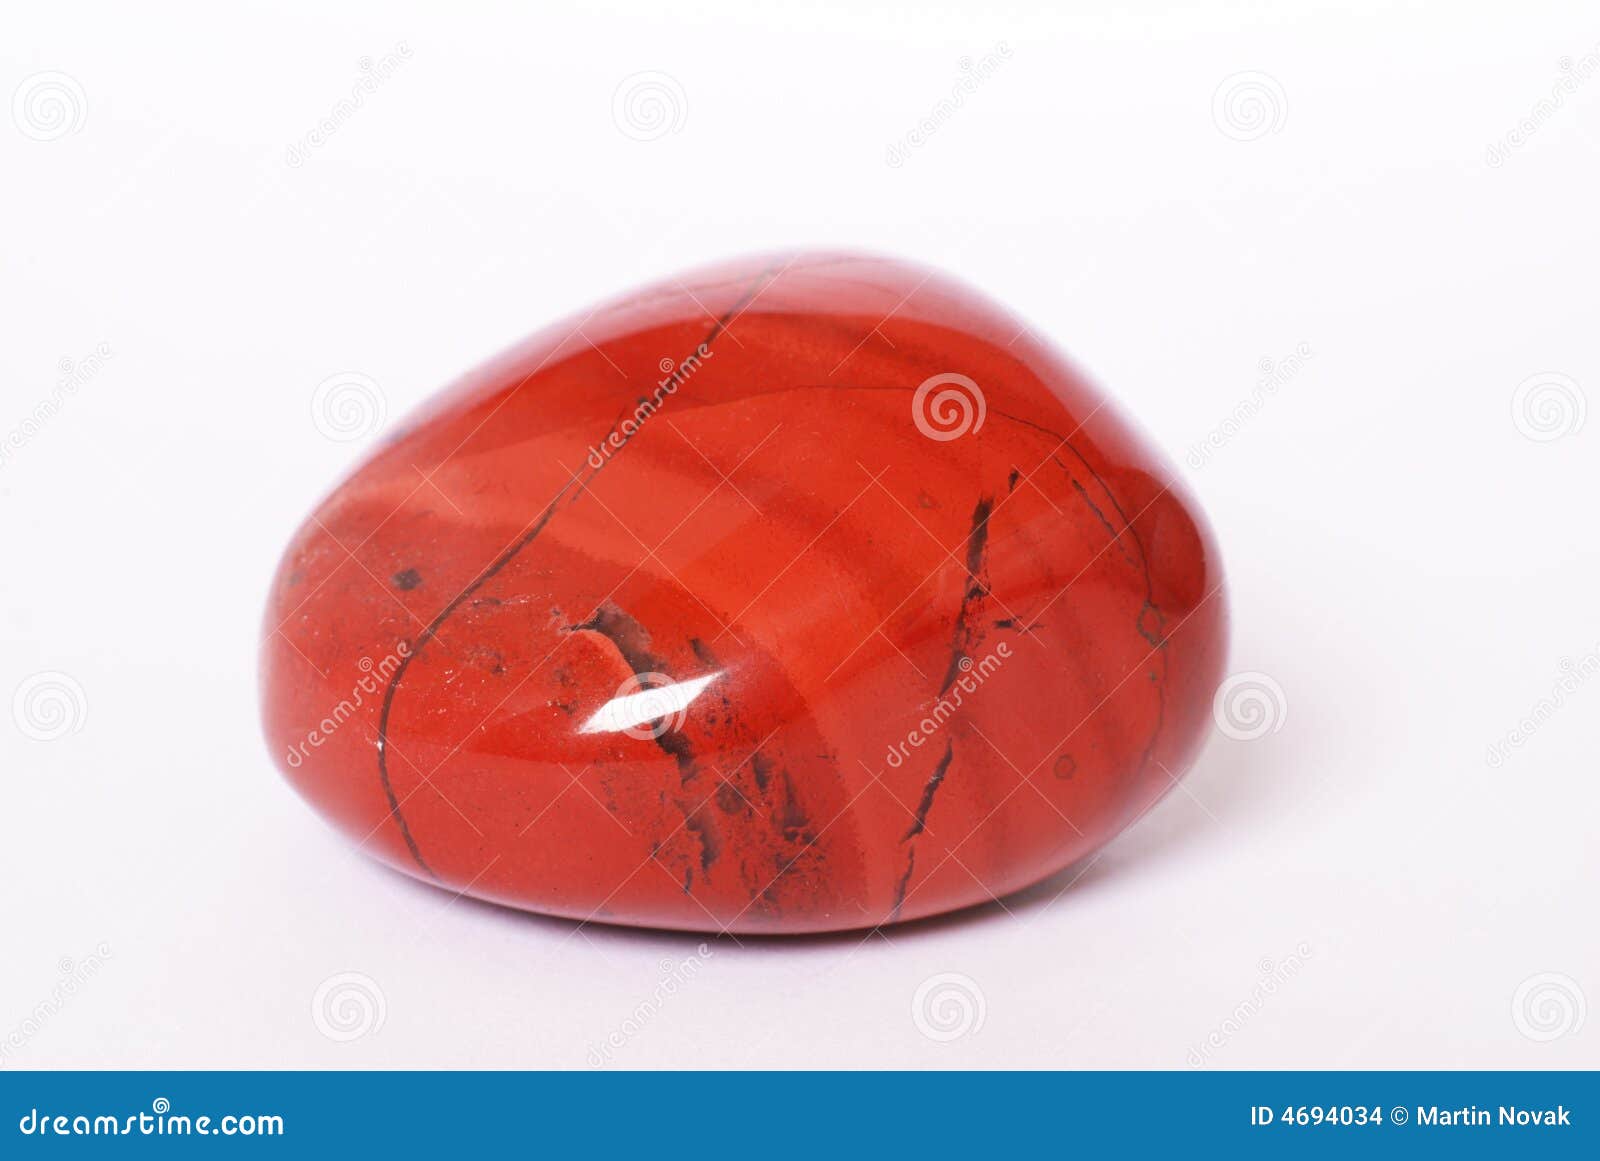 这个红色的石头是什么石？_百度知道